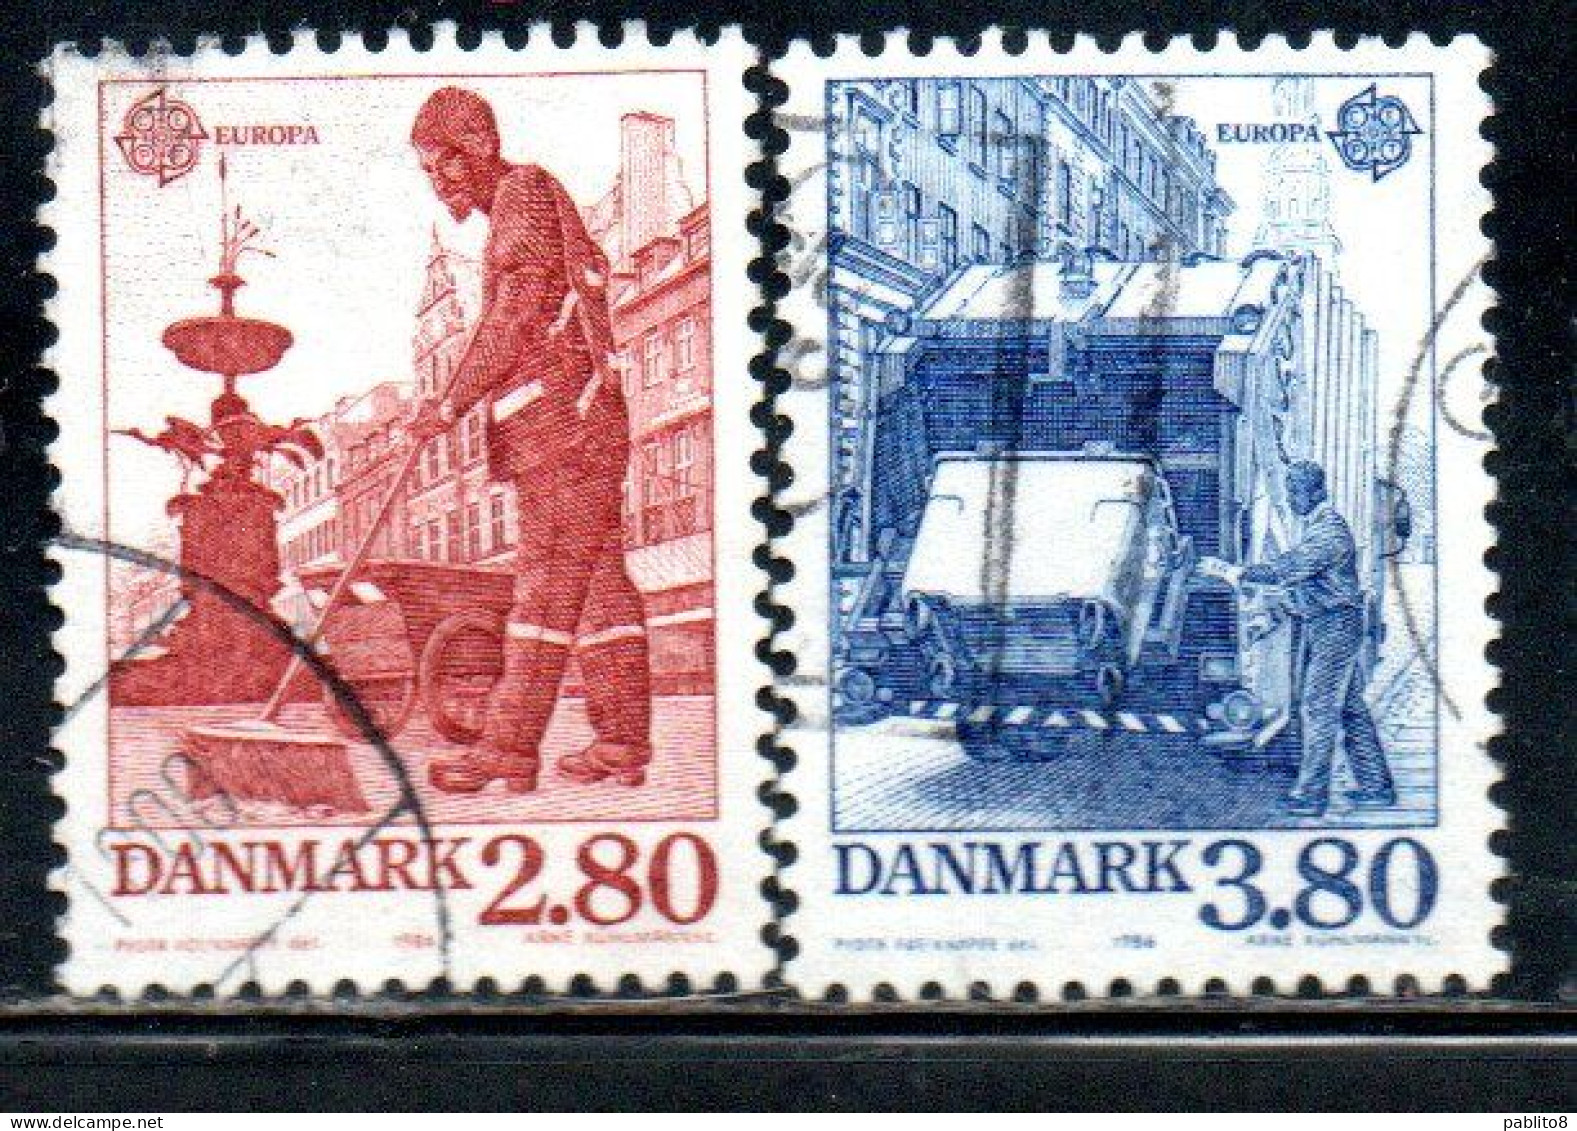 DANEMARK DANMARK DENMARK DANIMARCA 1986 EUROPA CEPT COMPLETE SET SERIE COMPLETA USED USATO OBLITERE' - Usati